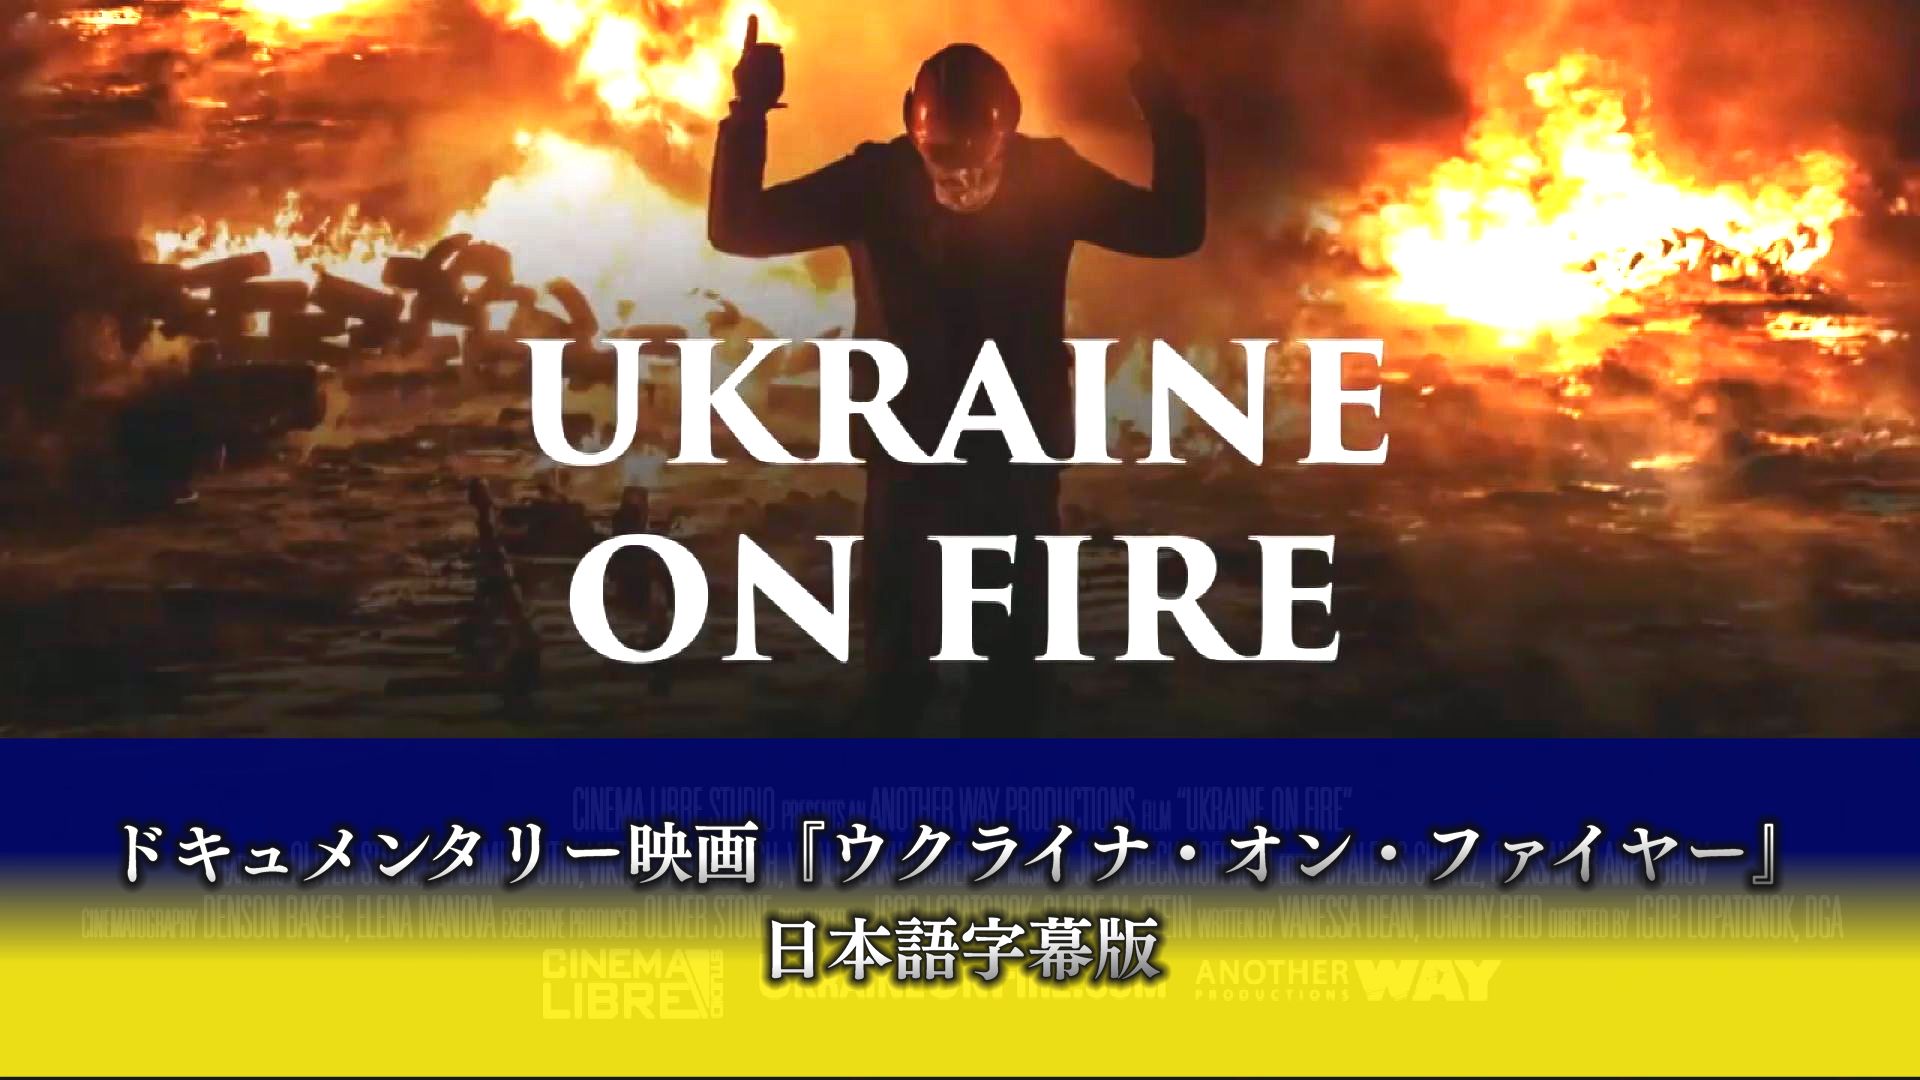 【全編公開中！】ドキュメンタリー映画『ウクライナ・オン・ファイヤー ―Ukraine on fire—』【日本語字幕版】